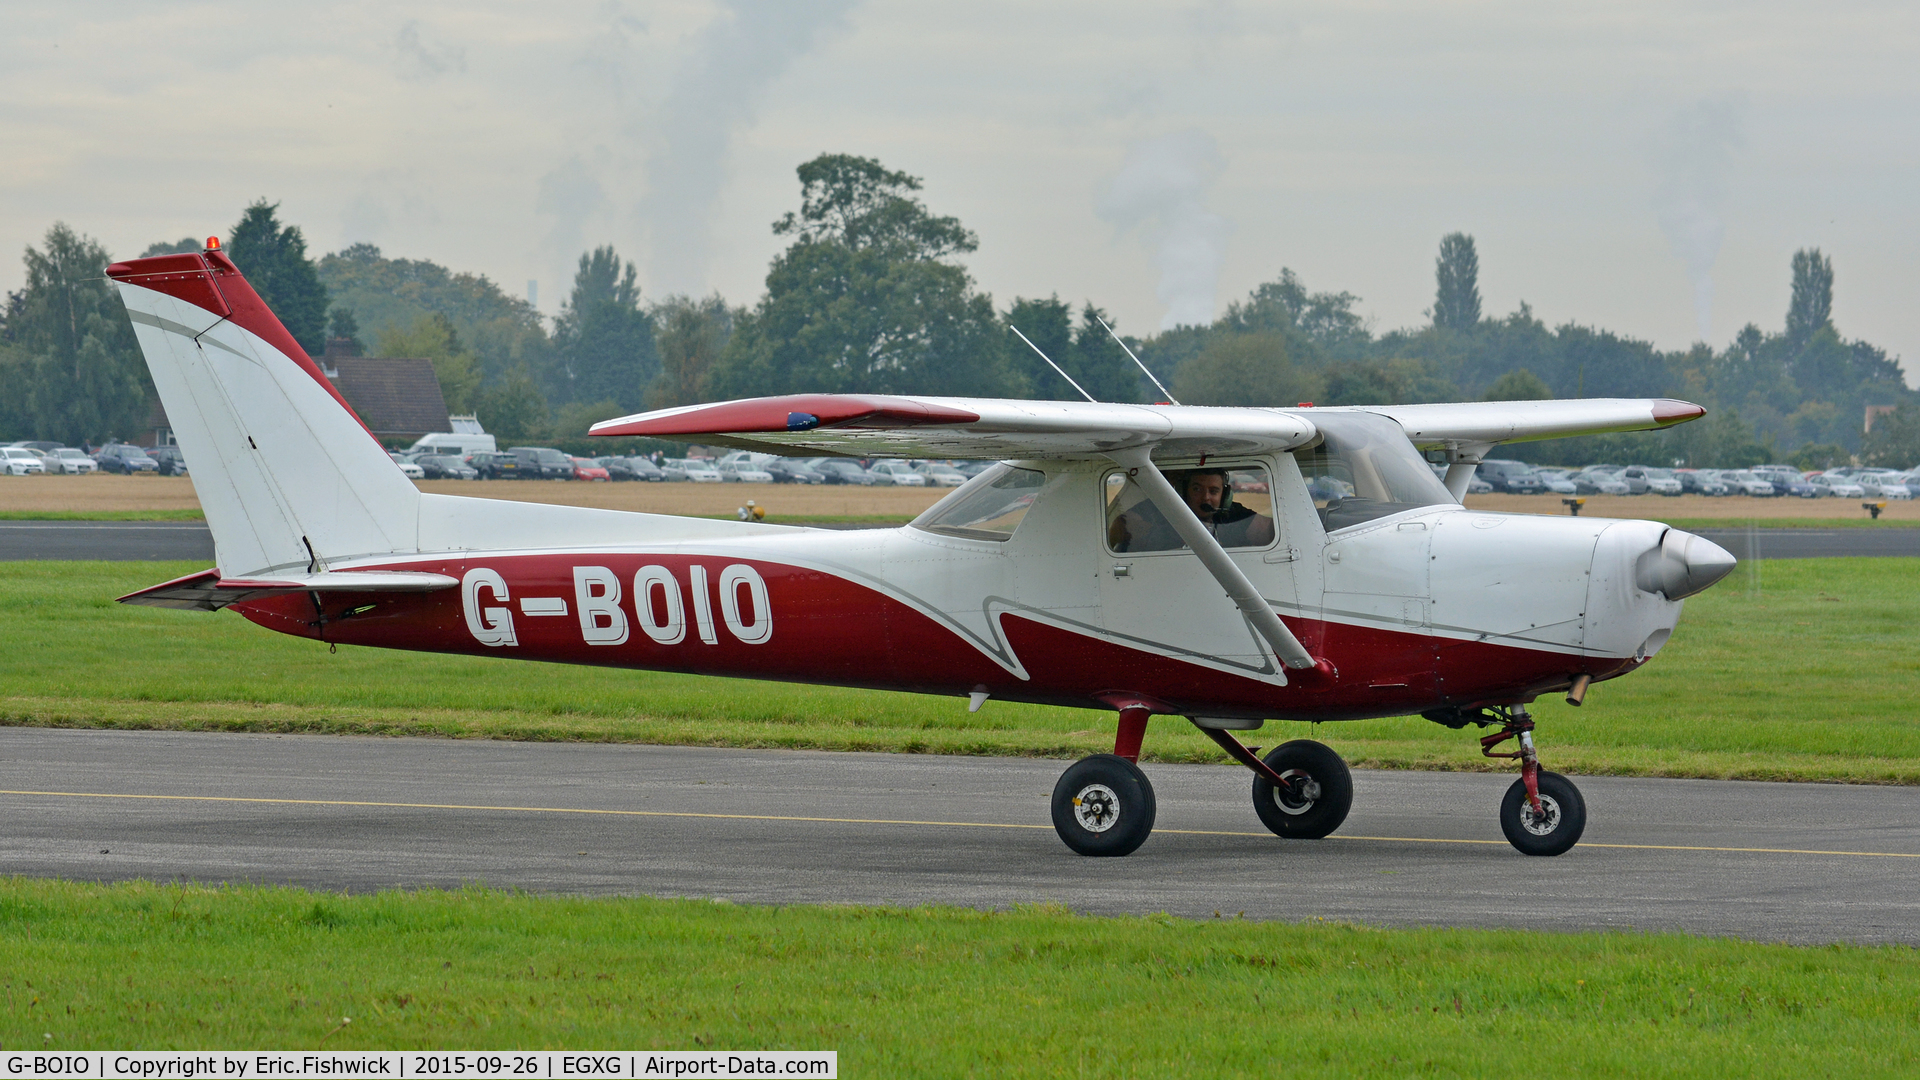 G-BOIO, 1977 Cessna 152 C/N 152-80260, 3. G-BOIO arriving at The Yorkshire Air Show, Church Fenton, Sept. 2015.